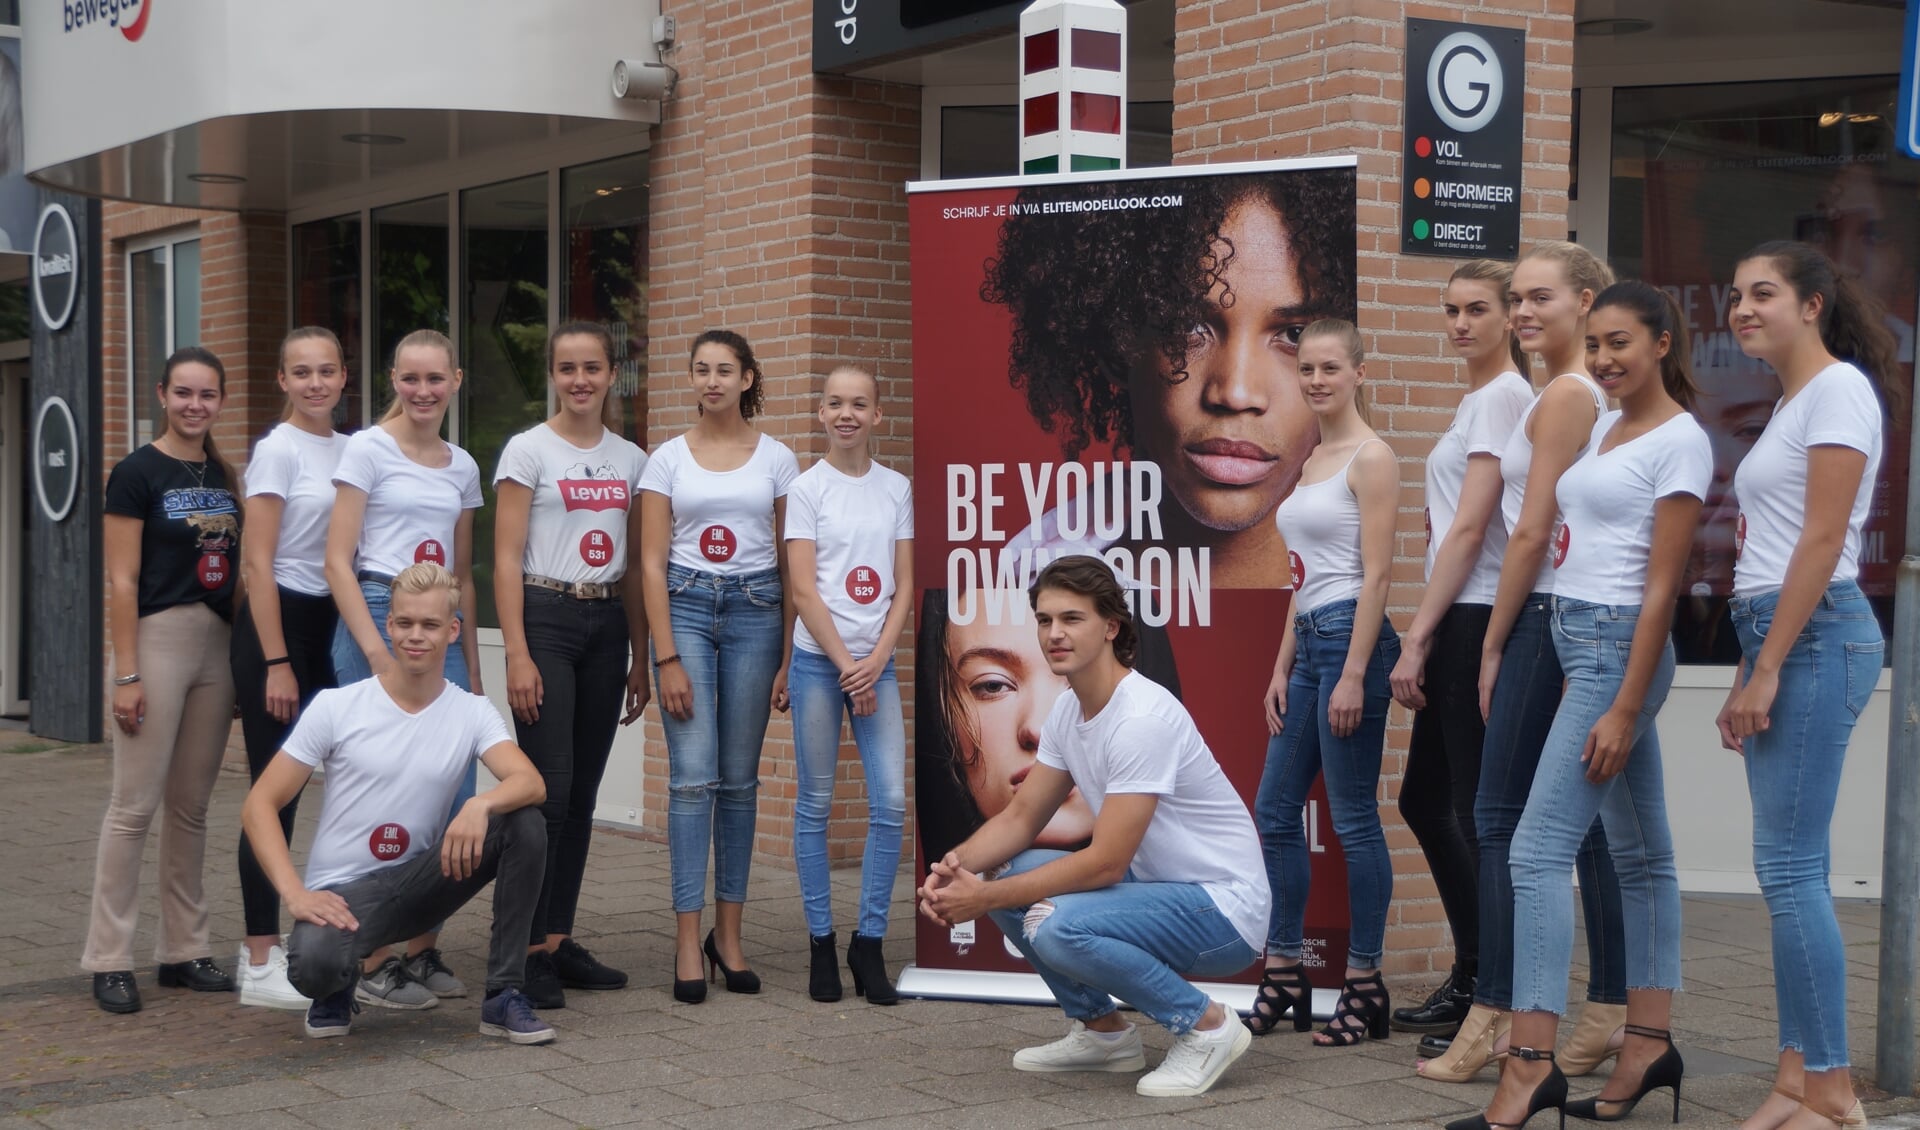 Tientallen jongeren uit de regio deden mee aan de casting bij Kapsalon Gijsbers in Boxmeer.